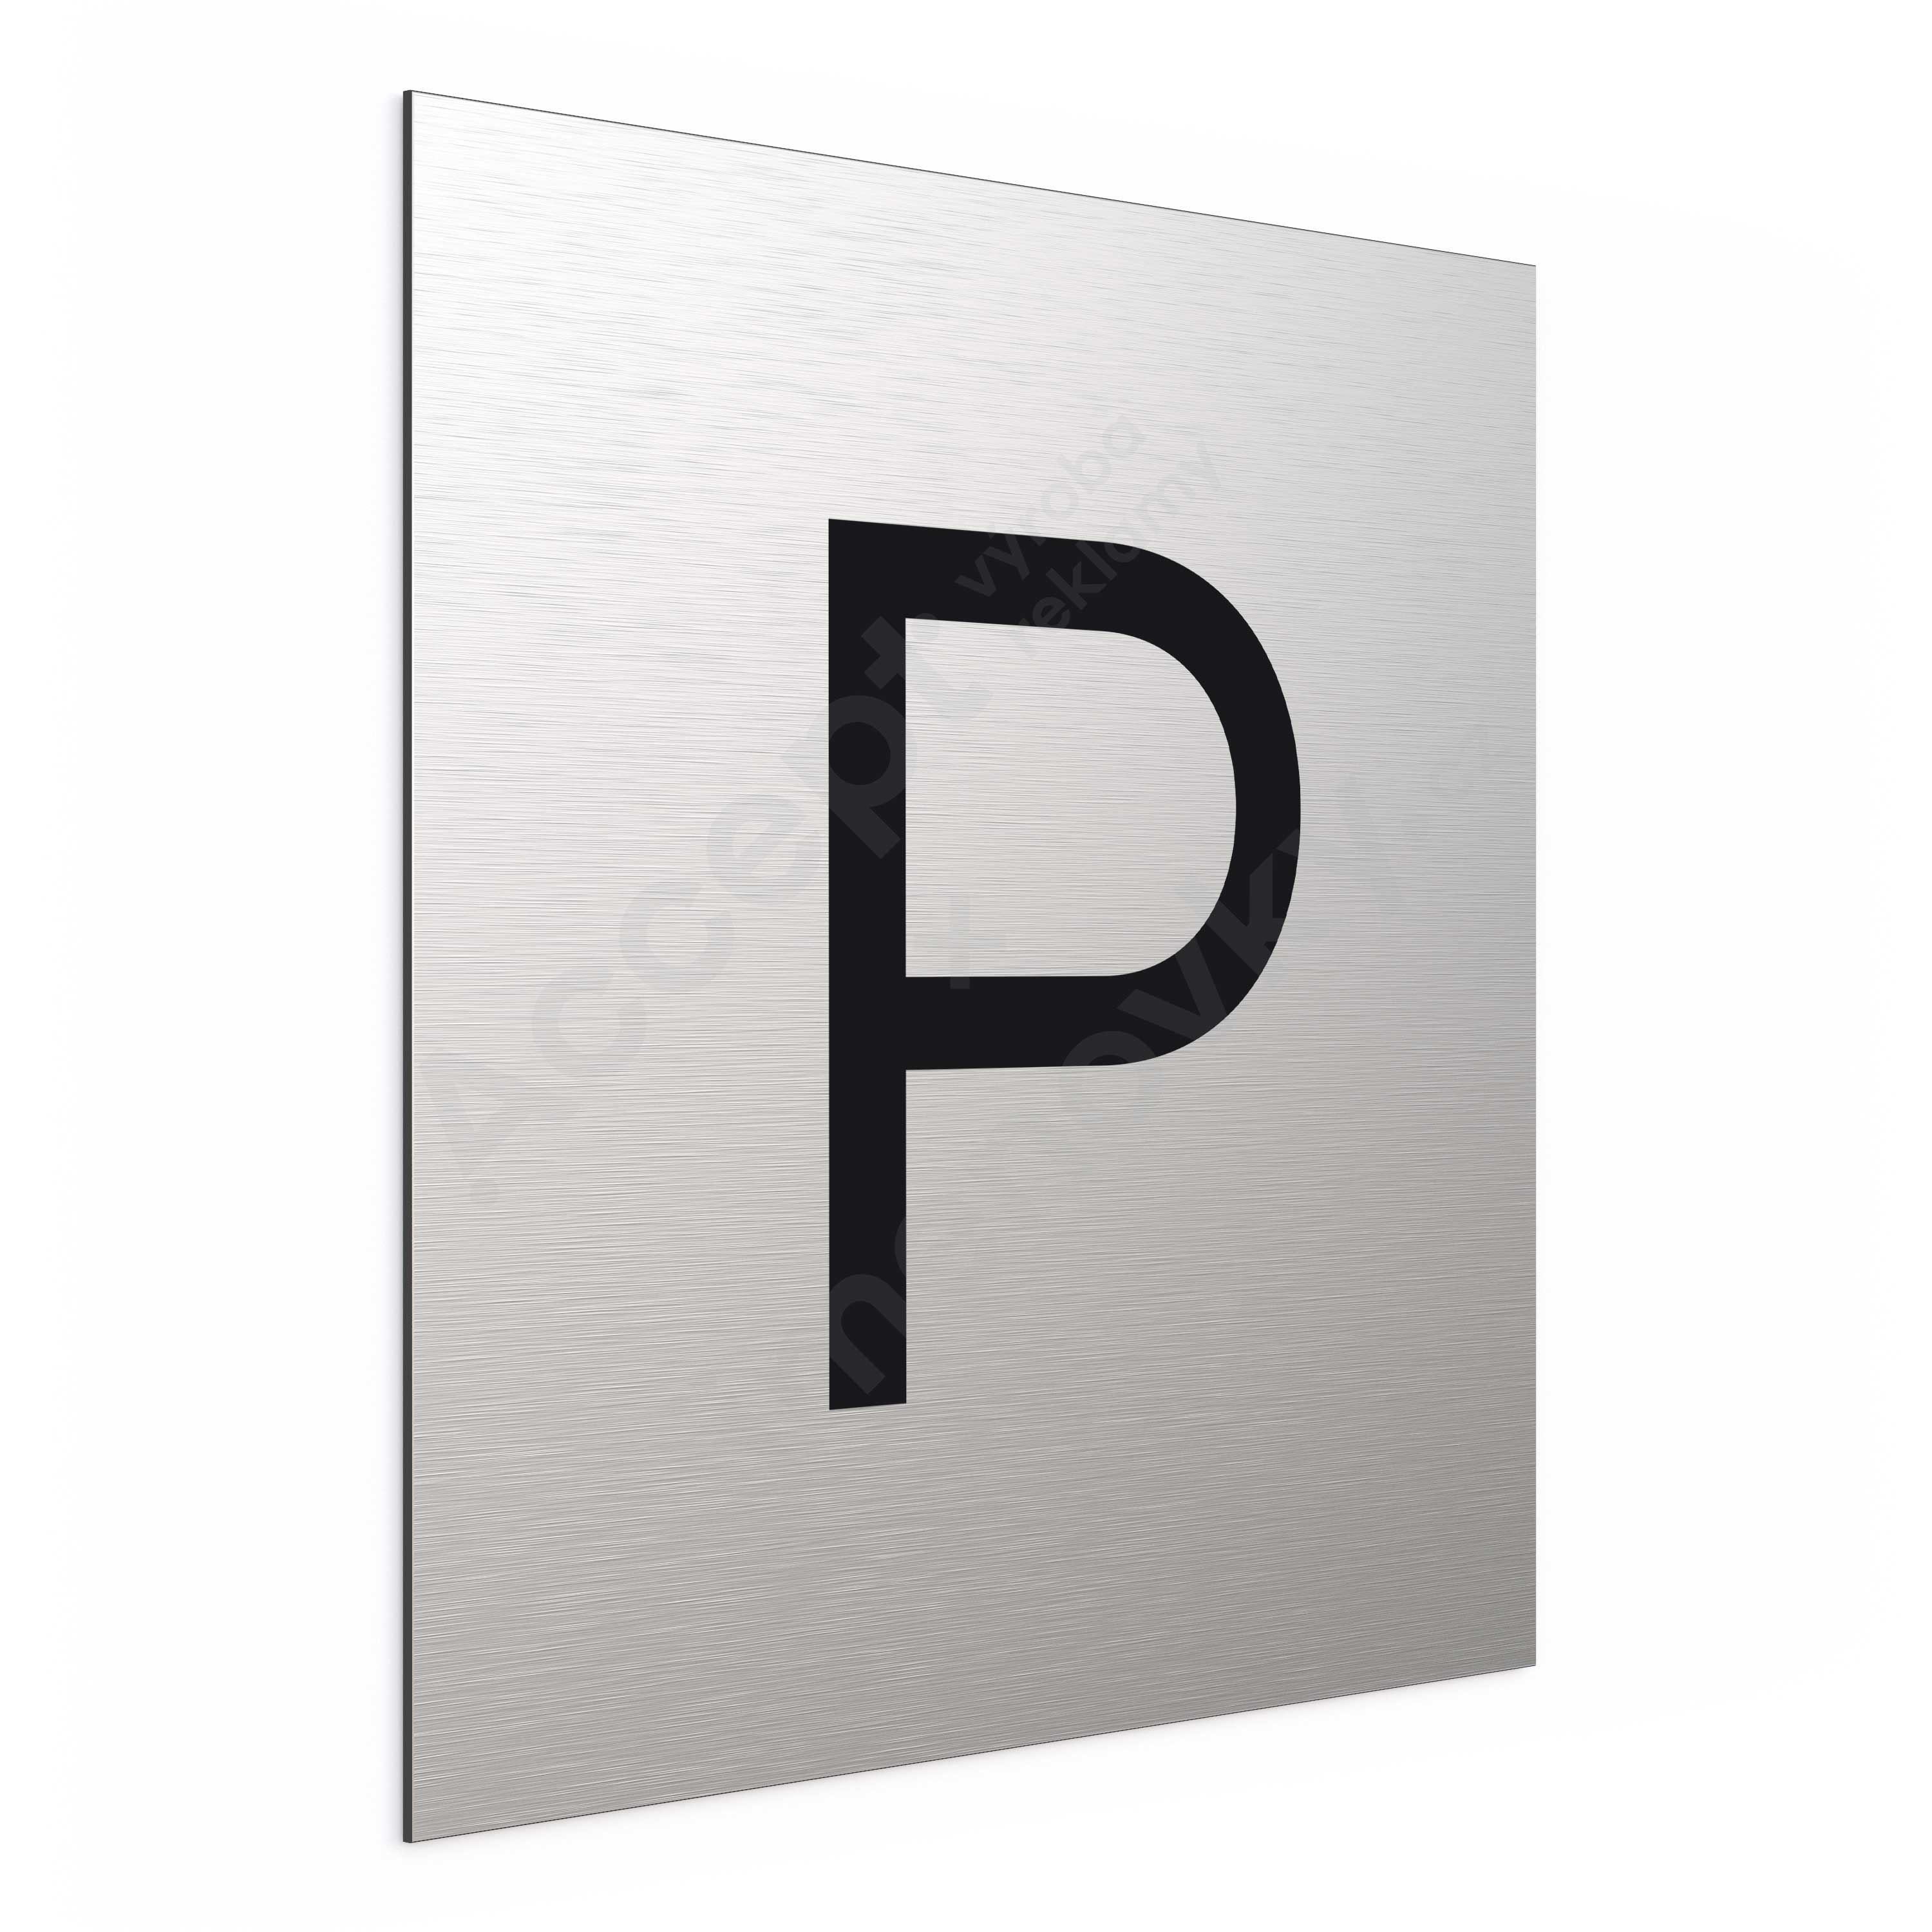 ACCEPT Označení podlaží - písmeno "P" (300 x 300 mm) - stříbrná tabulka - černý popis